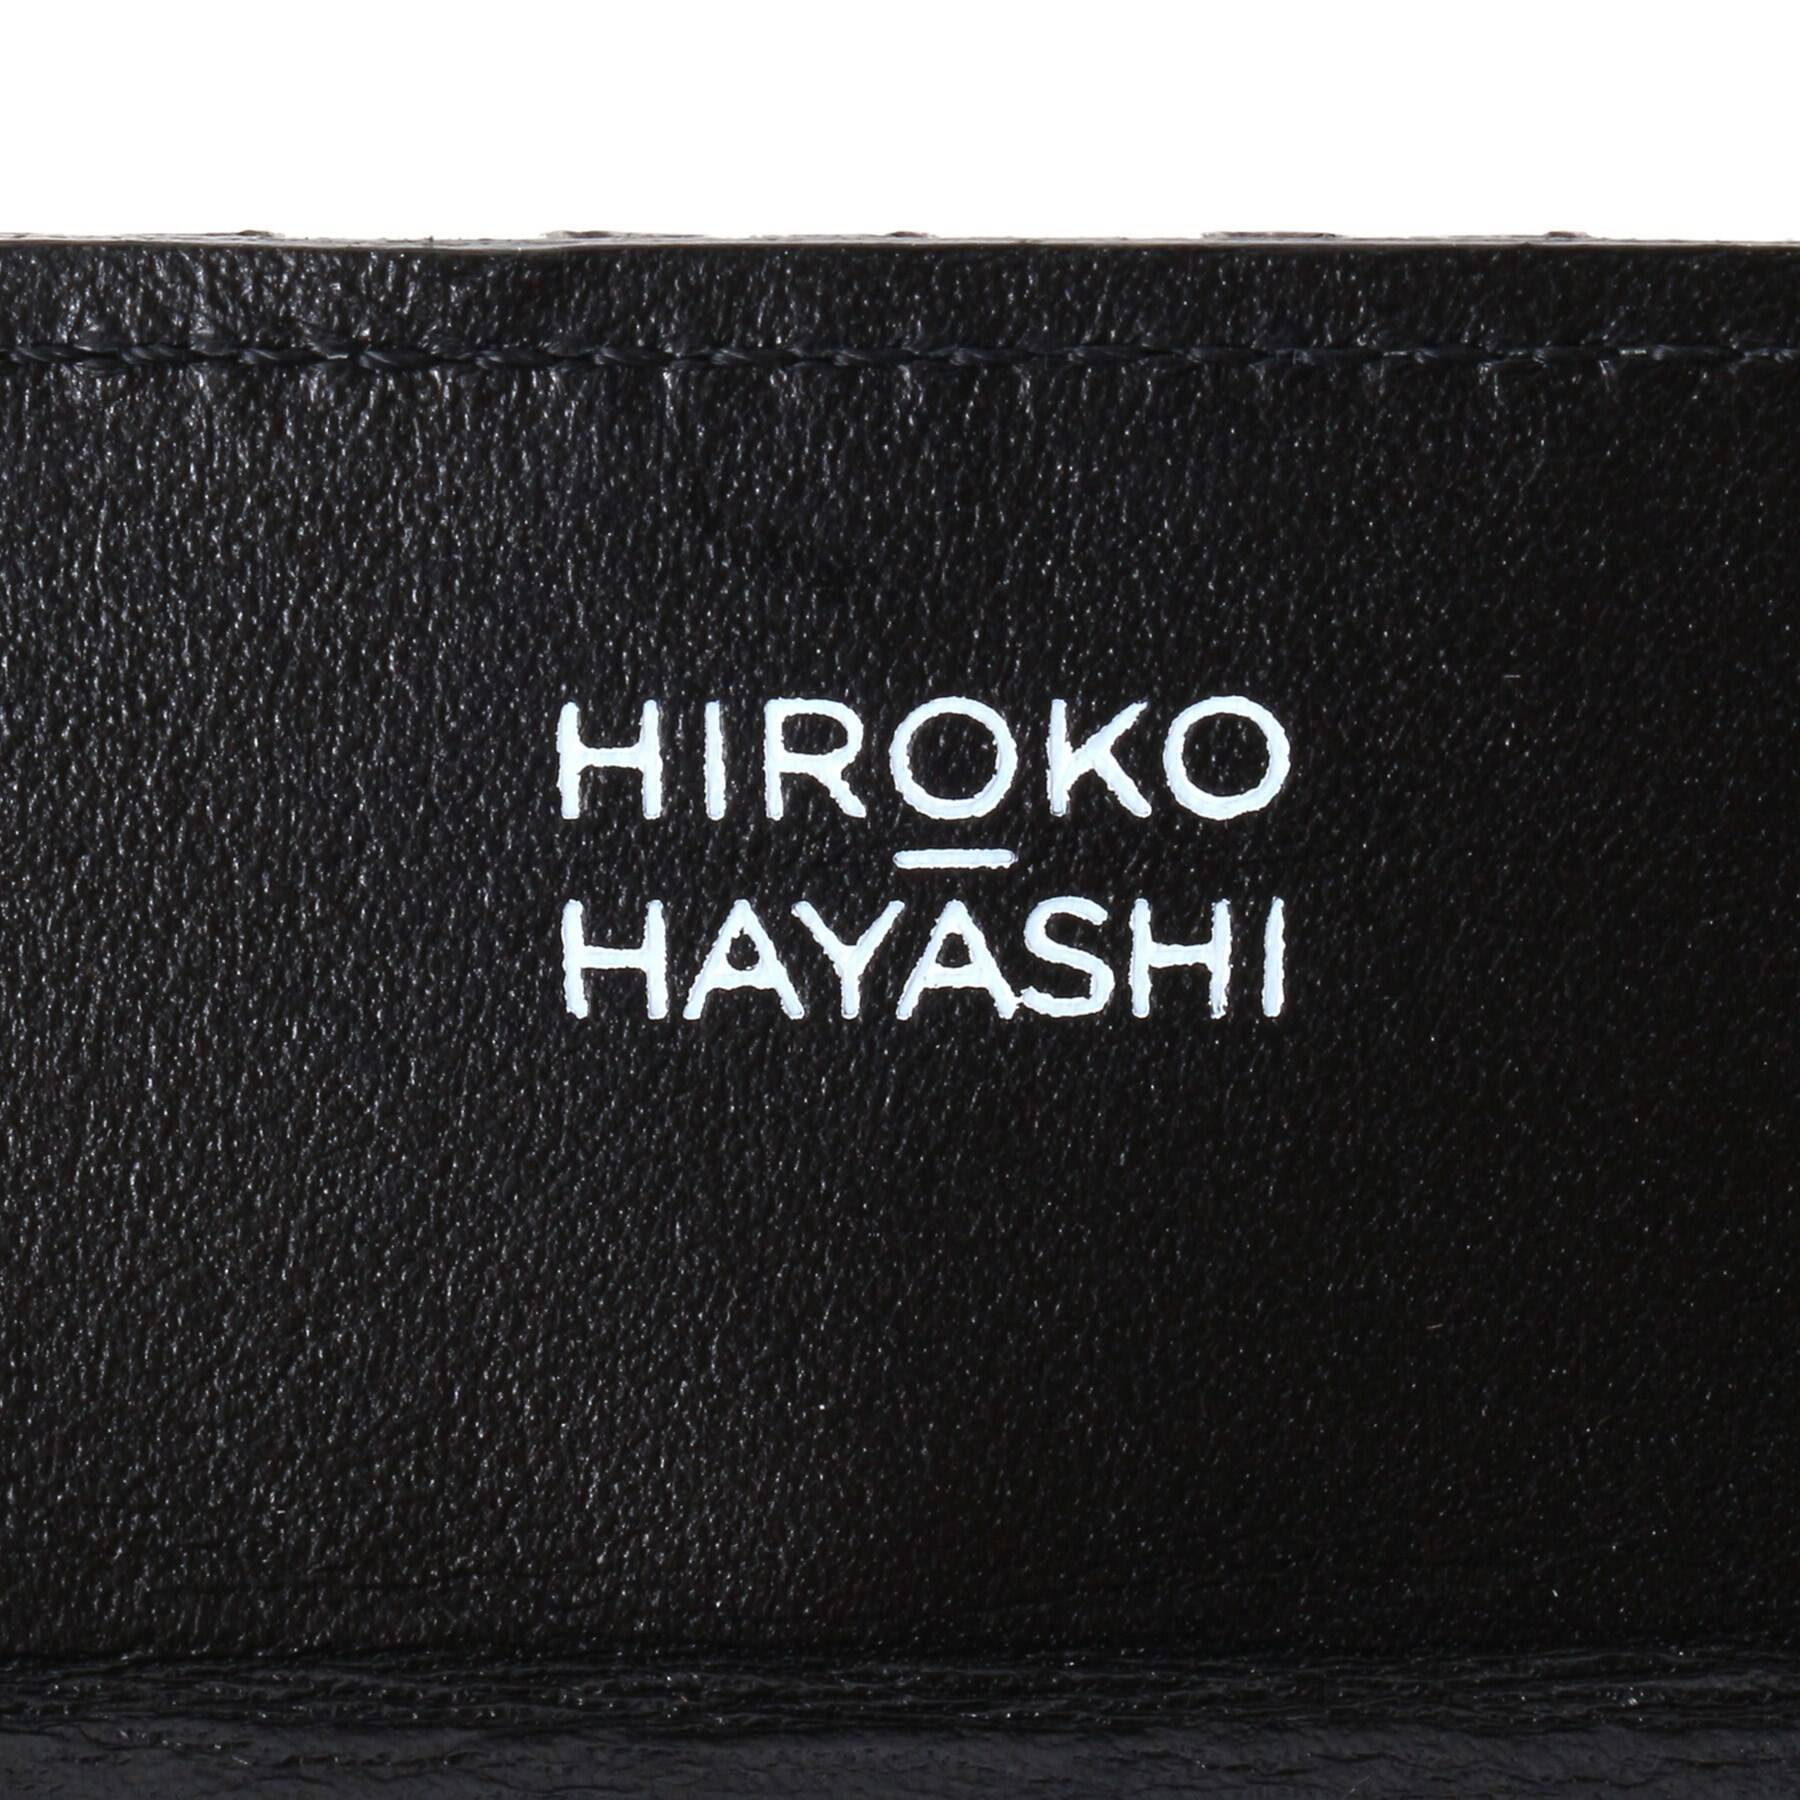 OTTICA(オッティカ)カードケース|HIROKO HAYASHI(ヒロコ ハヤシ)の通販